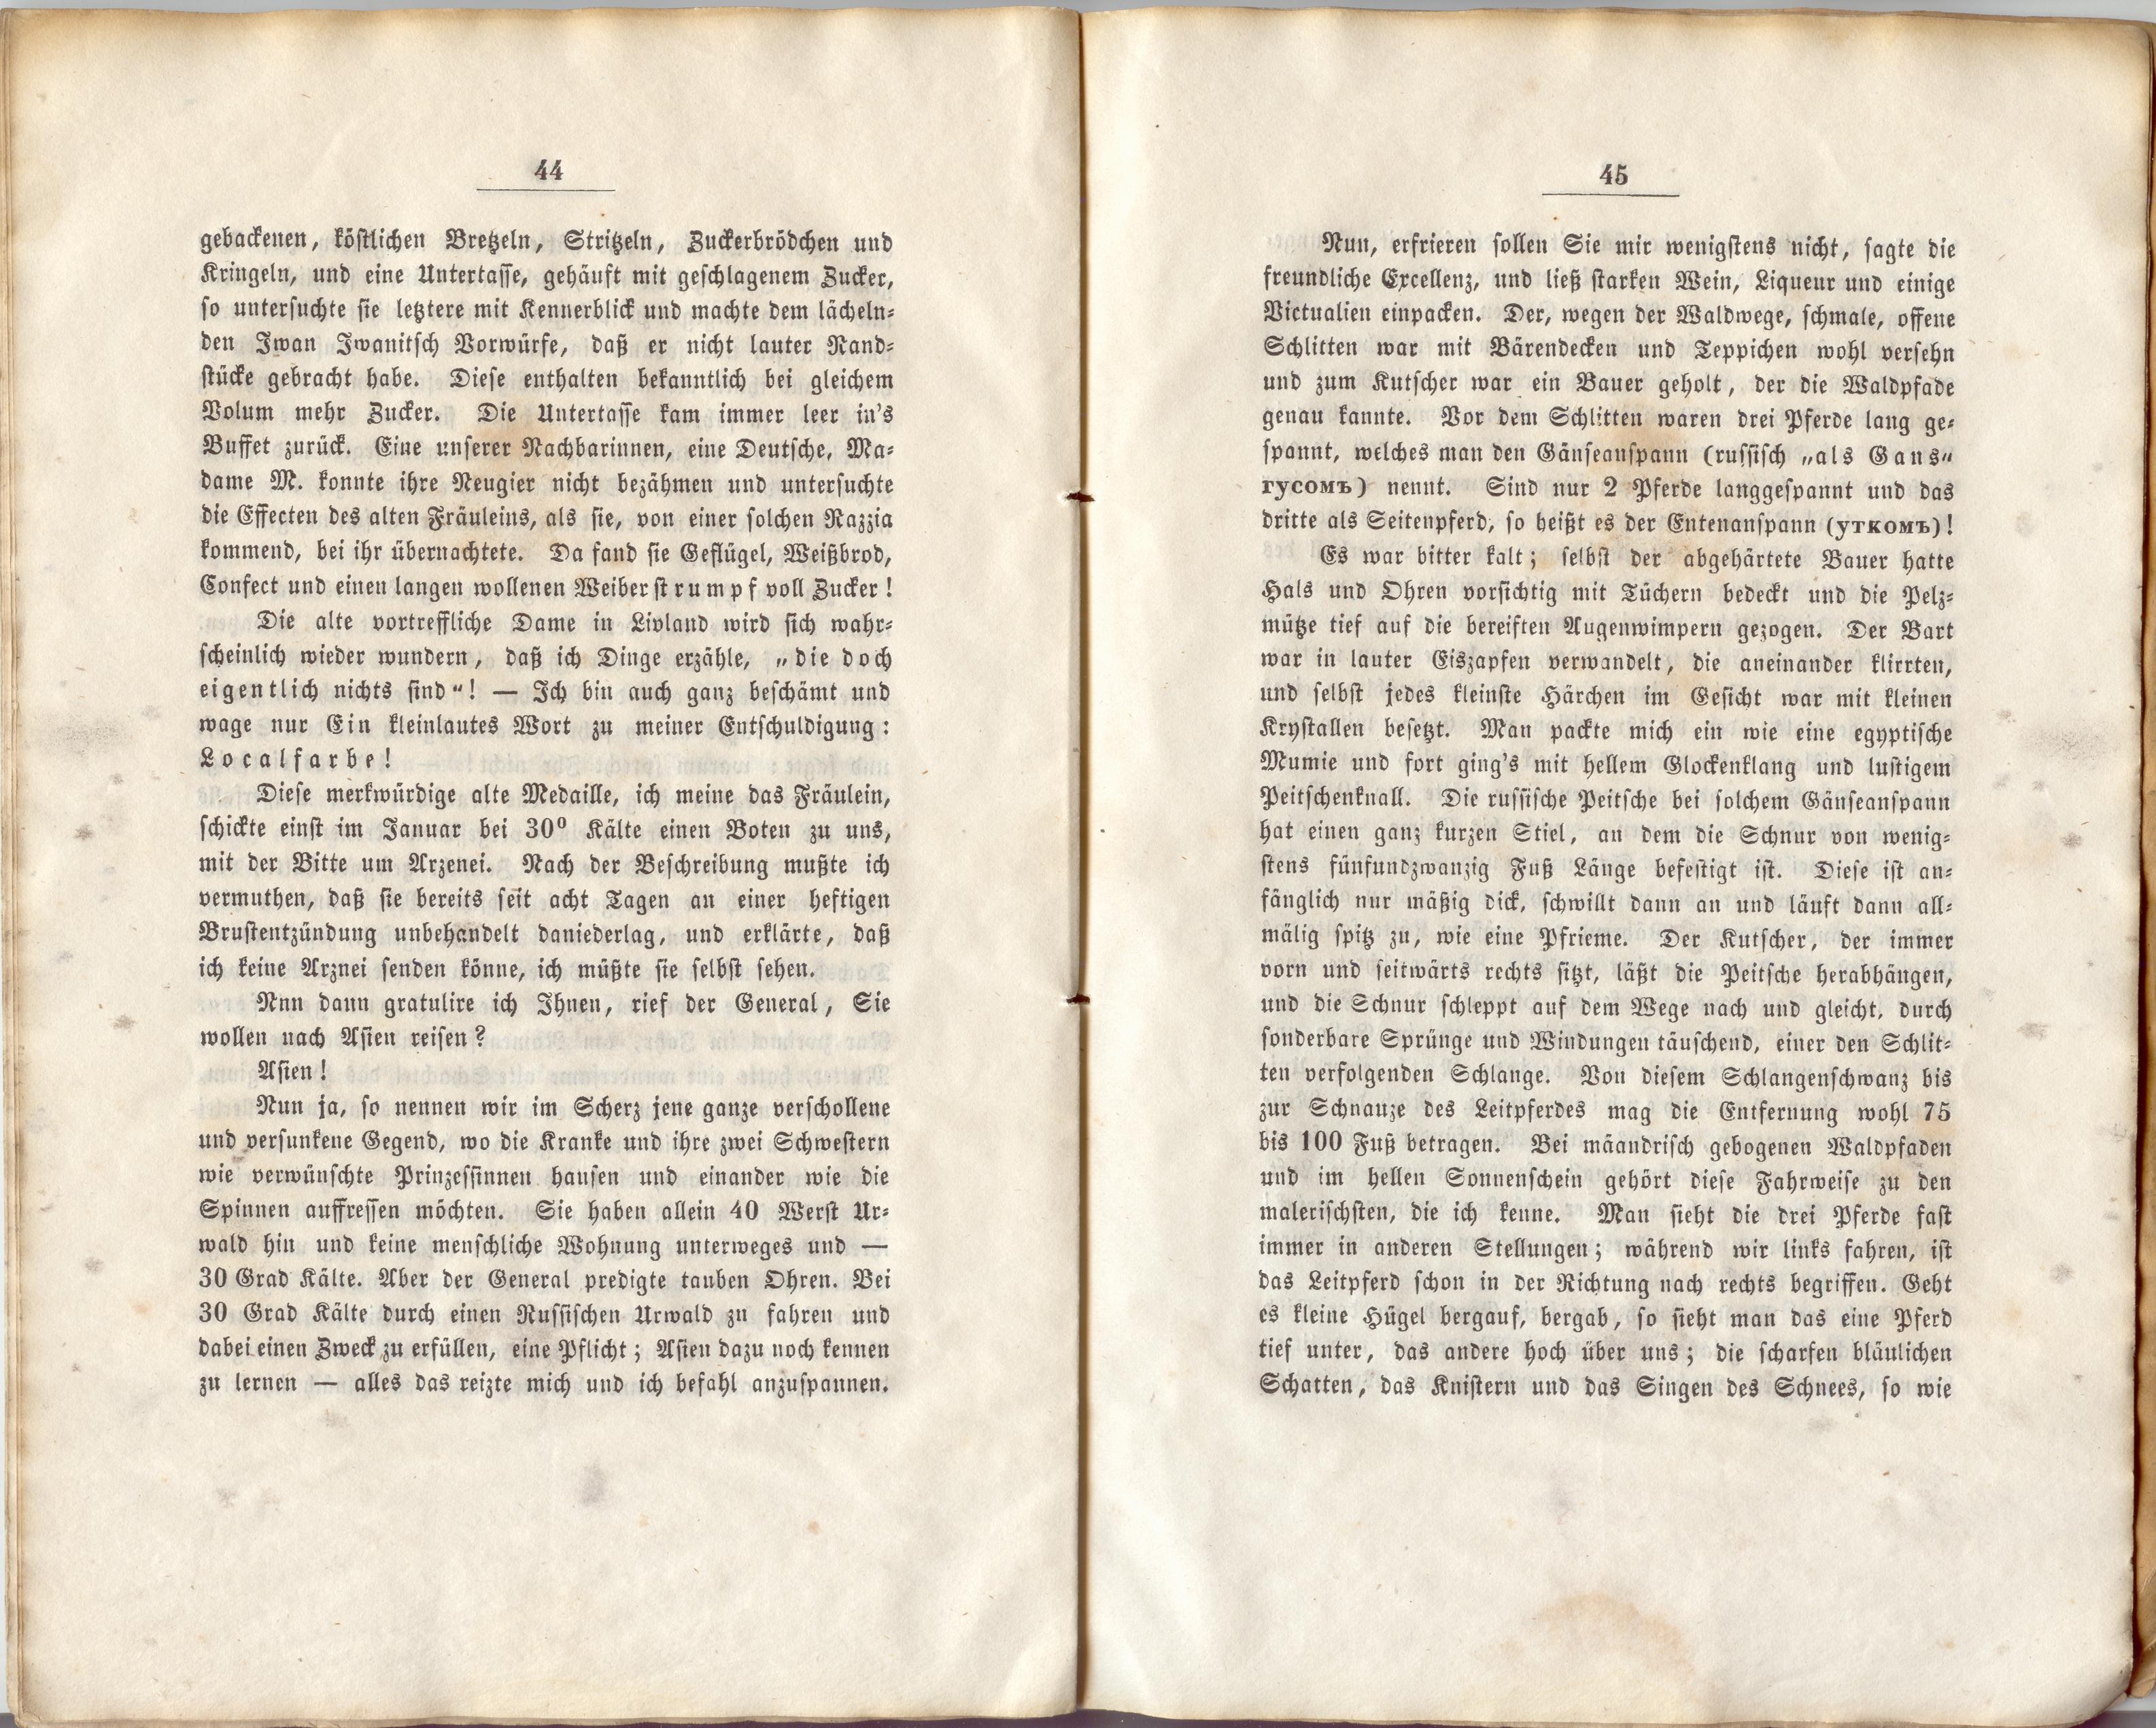 Medicinische Dorfgeschichten (1860) | 40. (44-45) Основной текст